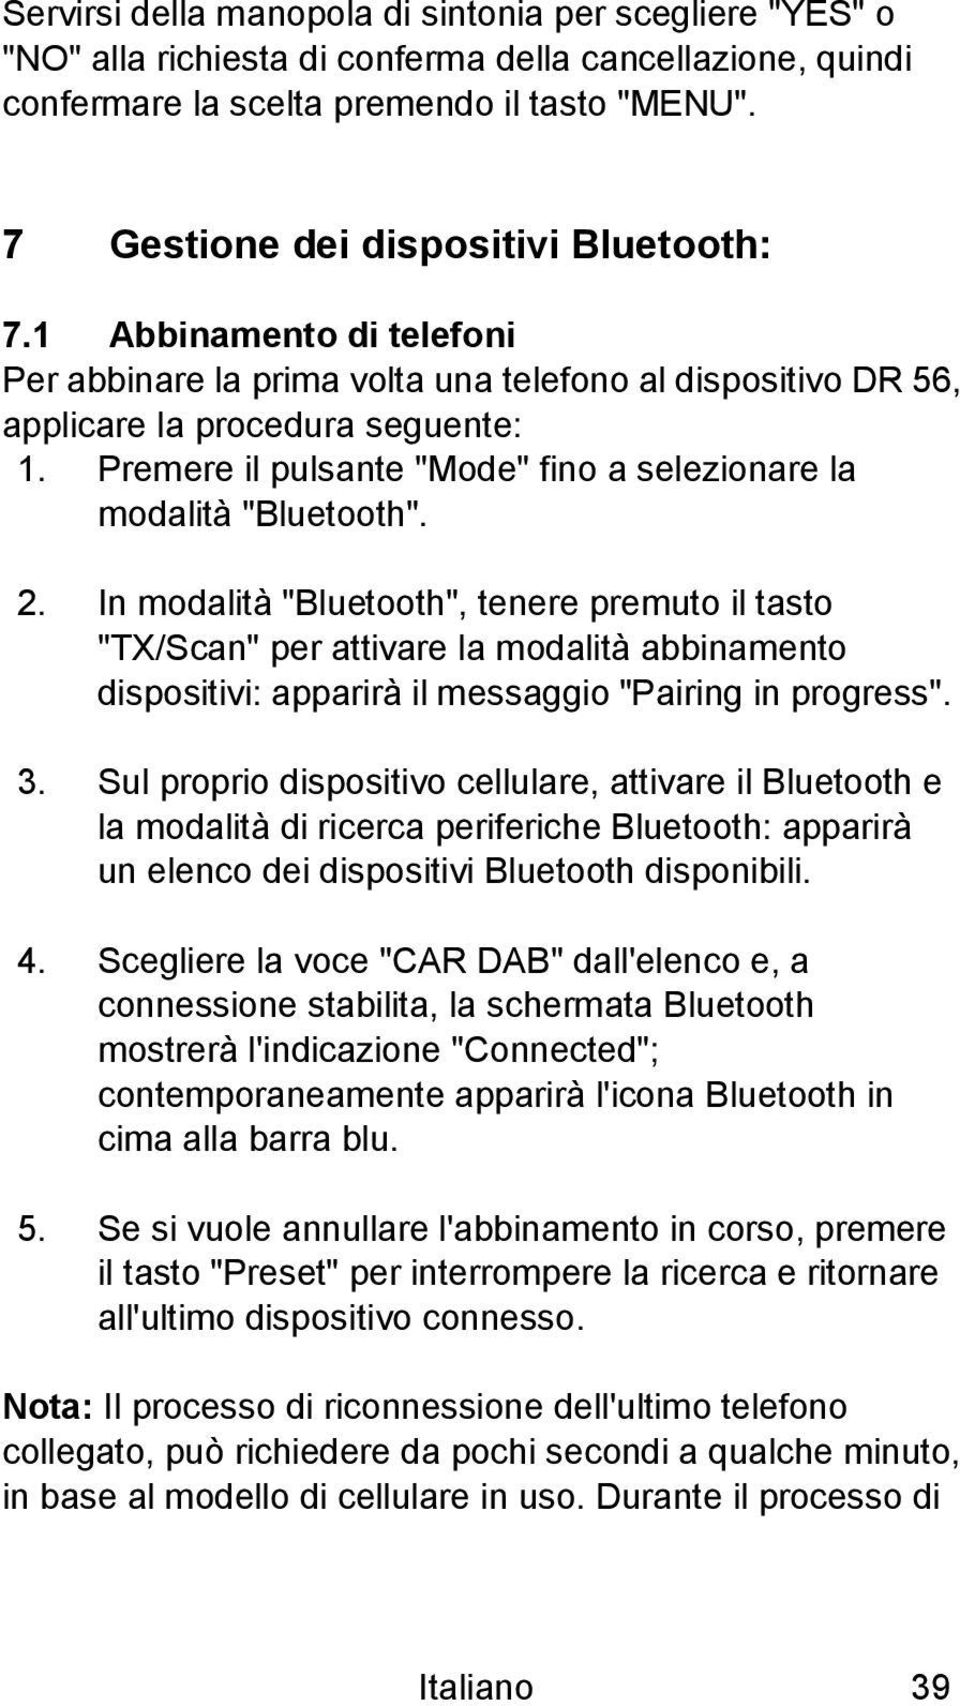 Premere il pulsante "Mode" fino a selezionare la modalità "Bluetooth". 2.